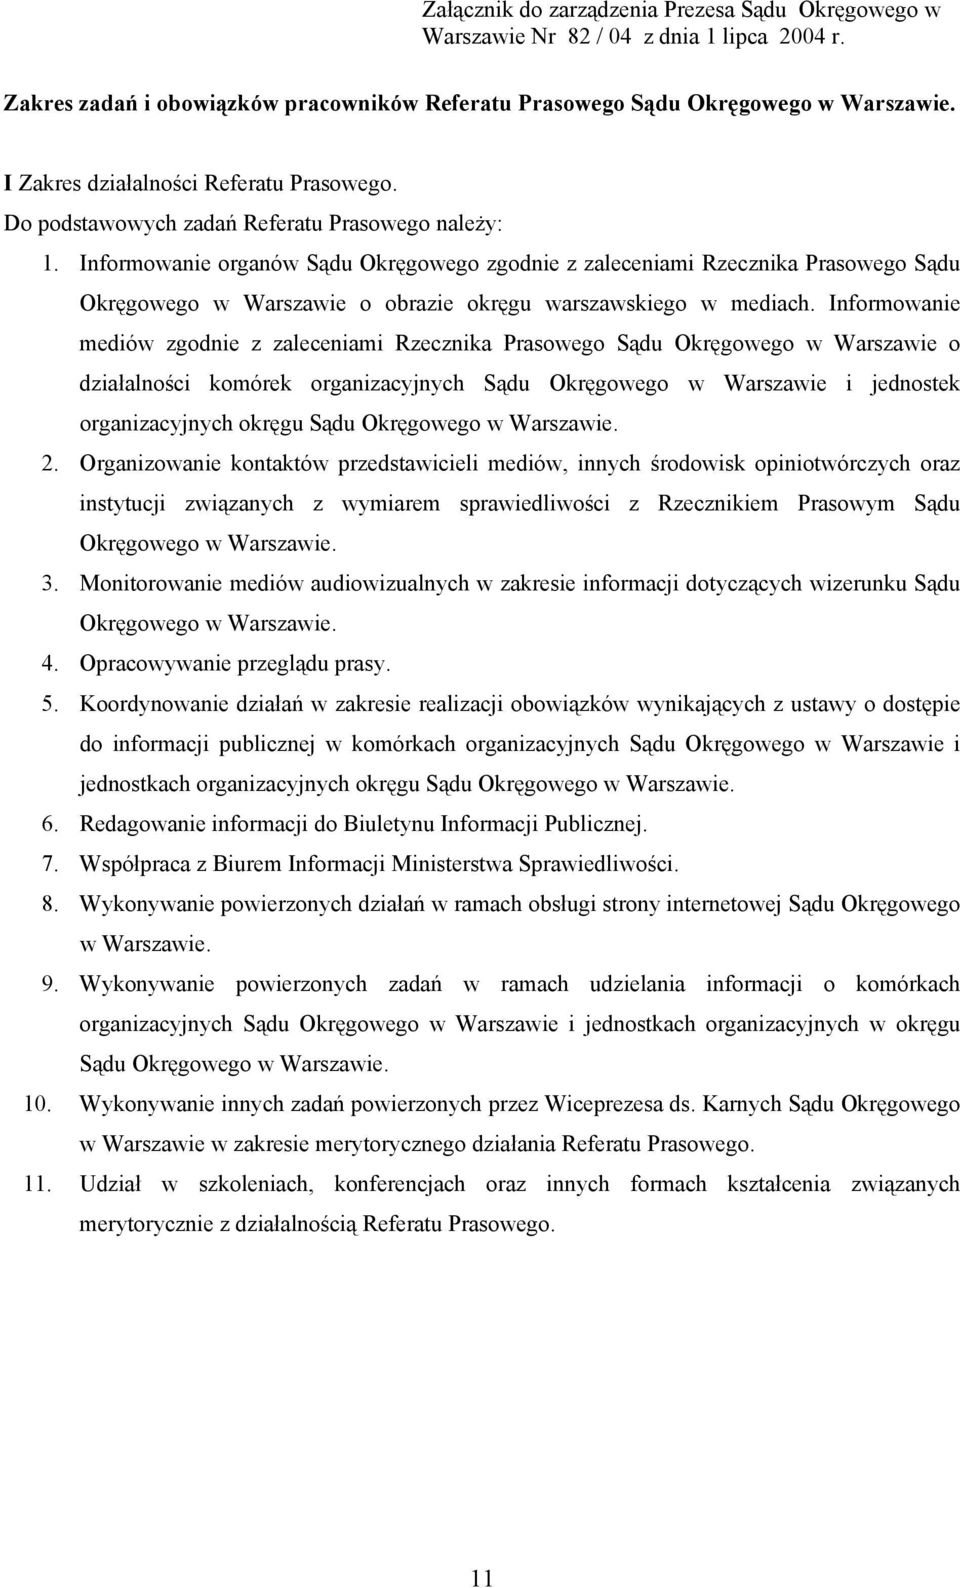 Informowanie organów Sądu Okręgowego zgodnie z zaleceniami Rzecznika Prasowego Sądu Okręgowego w Warszawie o obrazie okręgu warszawskiego w mediach.